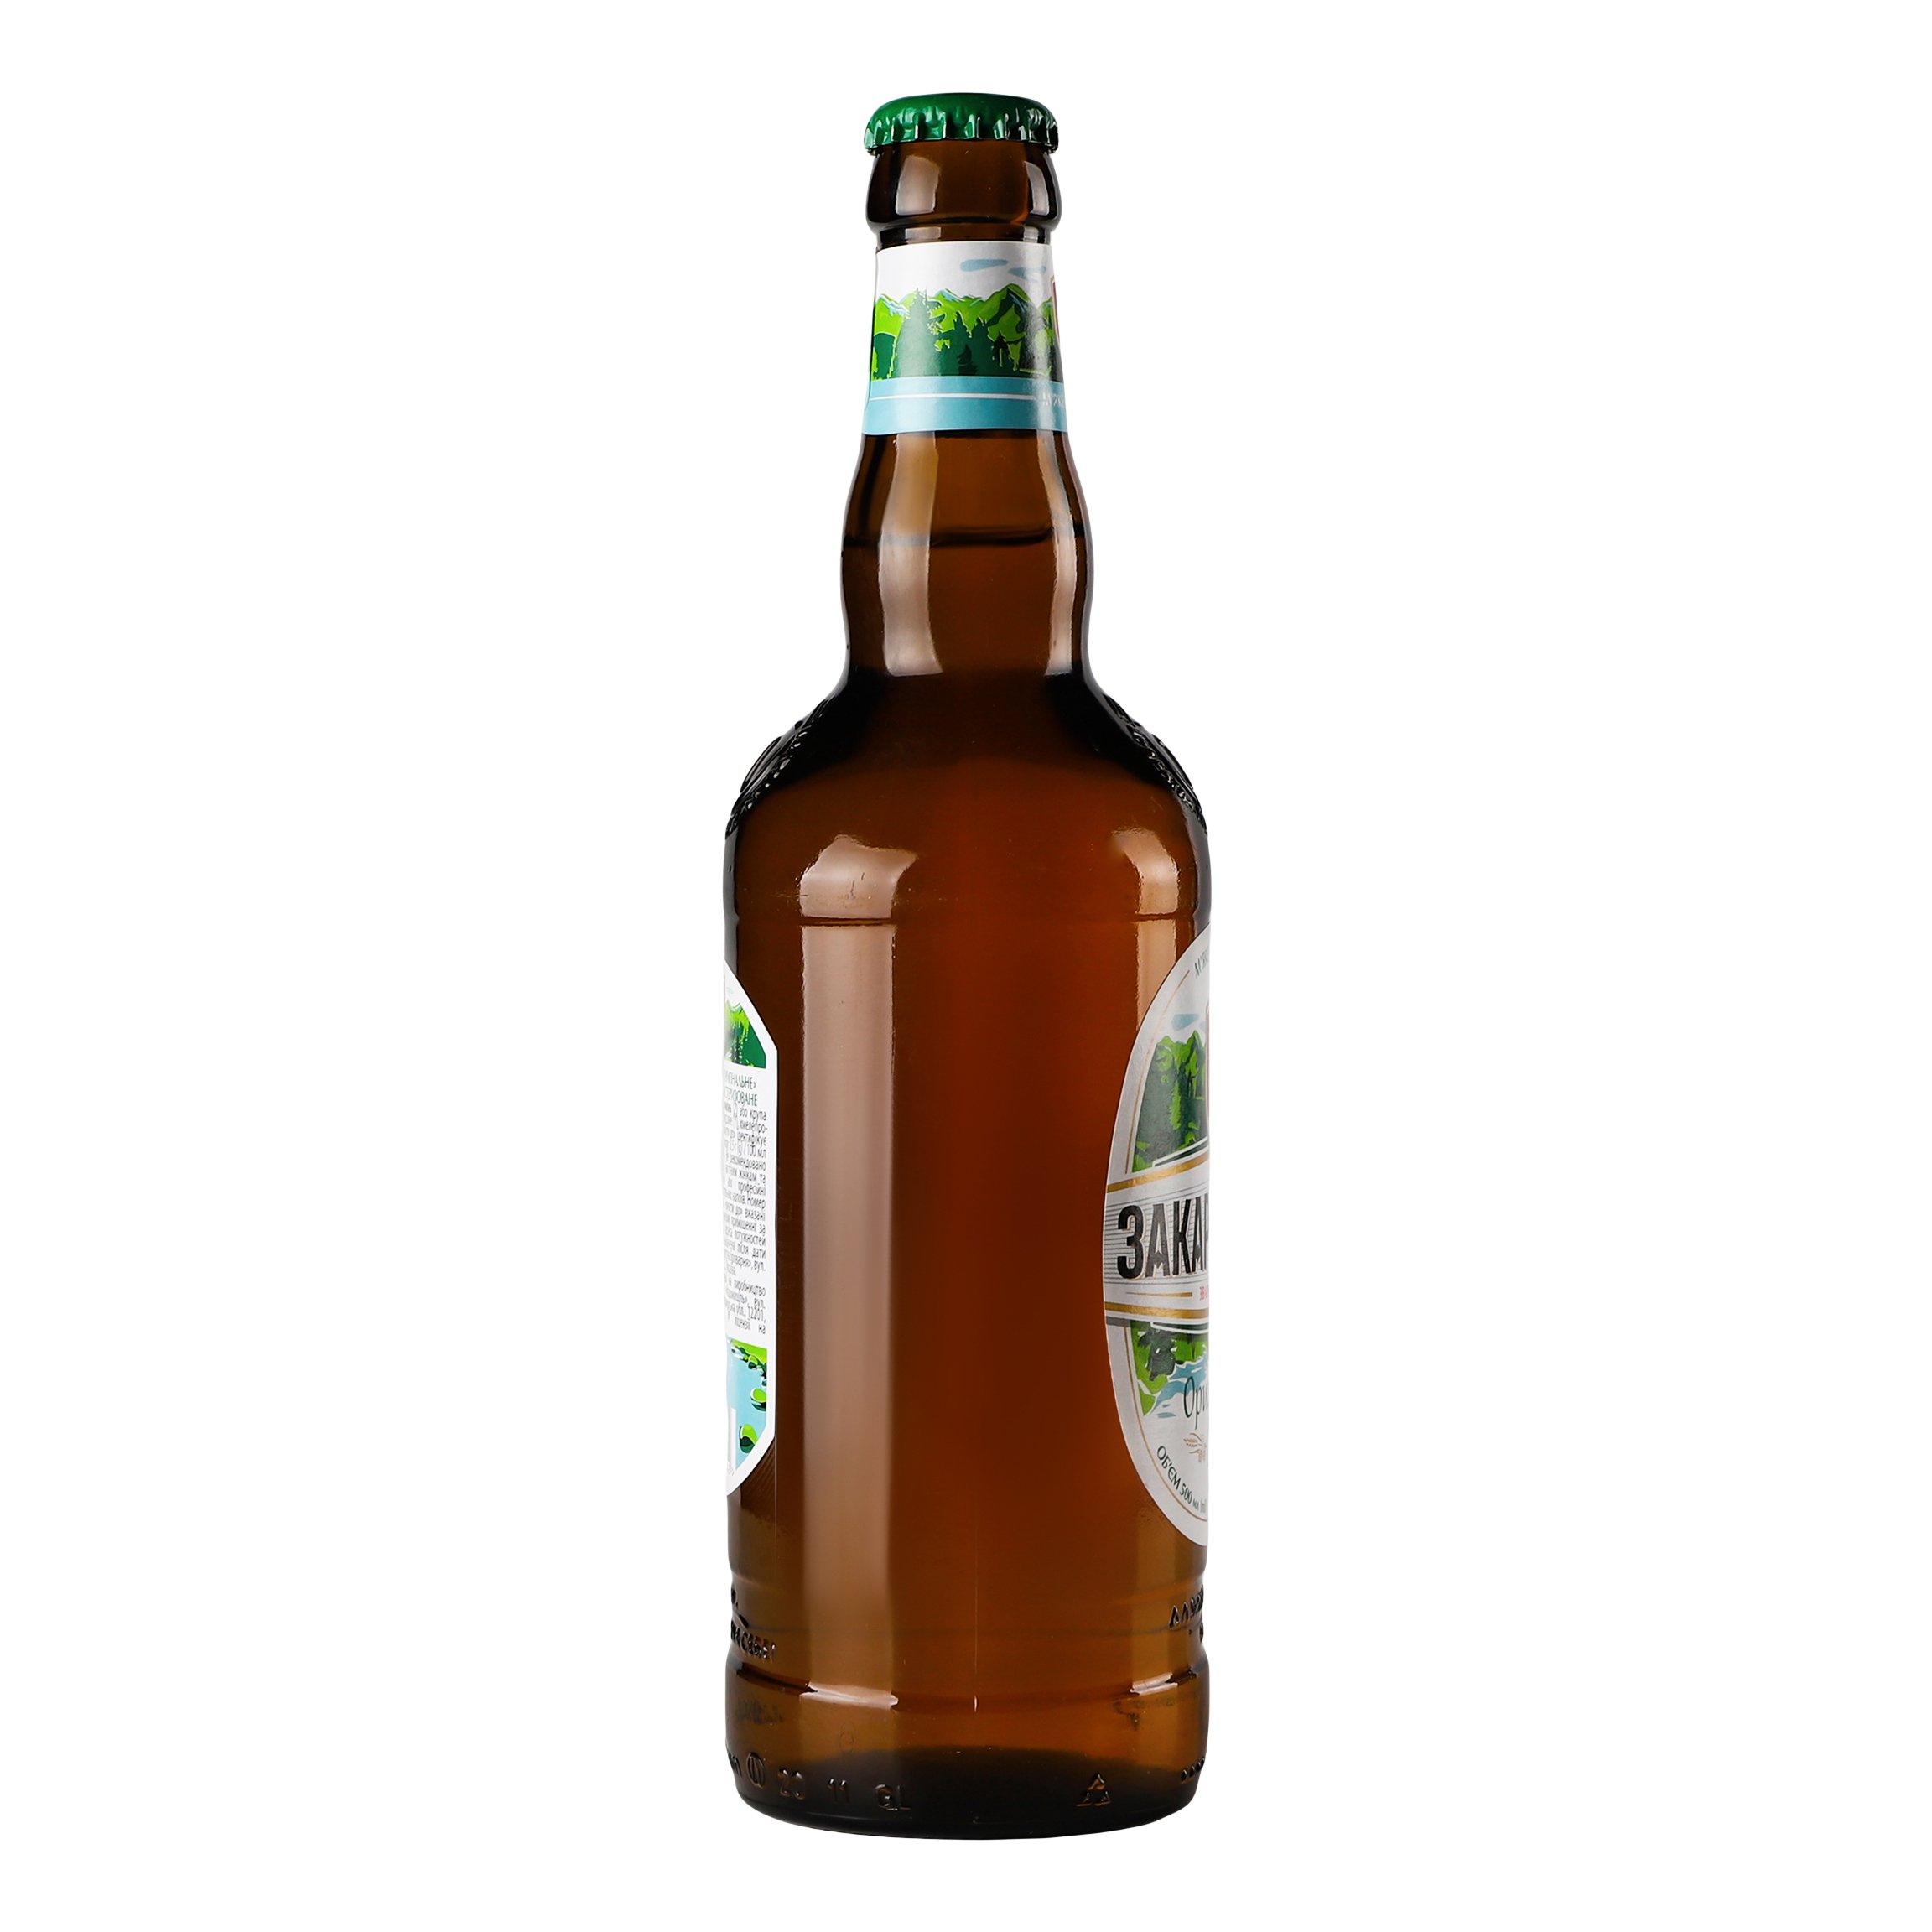 Пиво Перша приватна броварня Закарпатське, світле, фільтроване, 4,1%, 0,5 л (660937) - фото 2